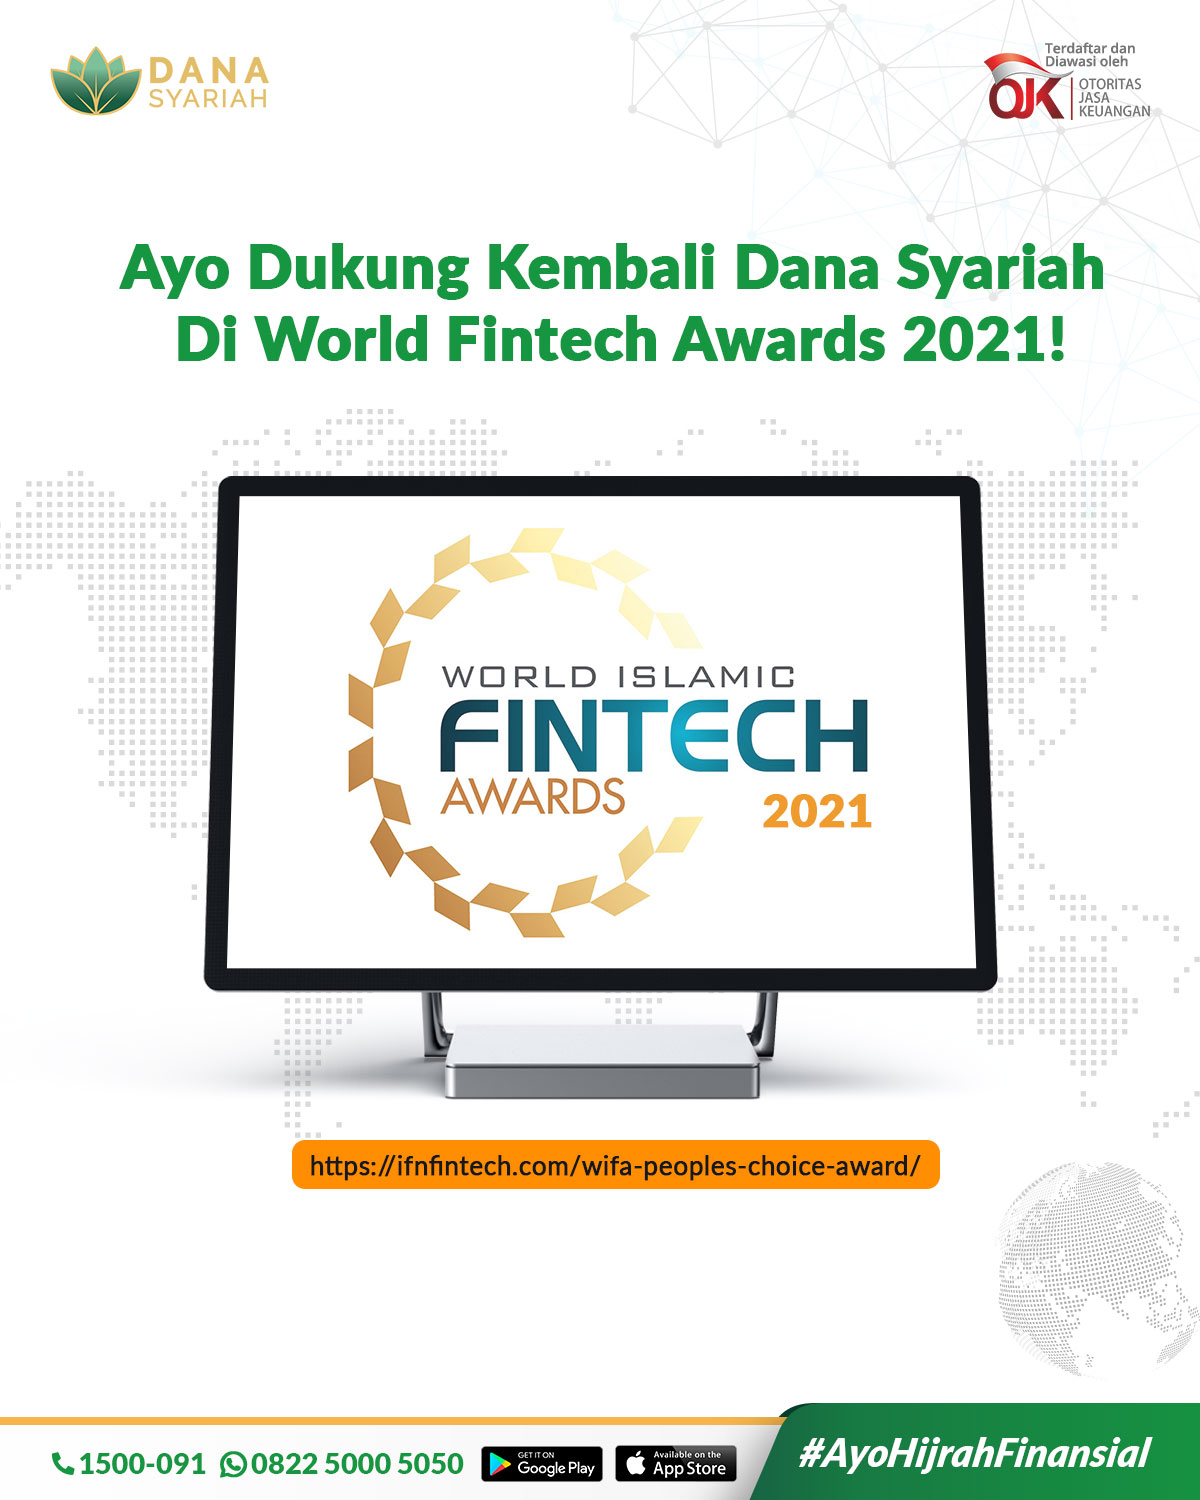 Dana Syariah Alhamdulillah Dana Syariah kembali menjadi nominasi di World Islamic Fintech Awards 2021